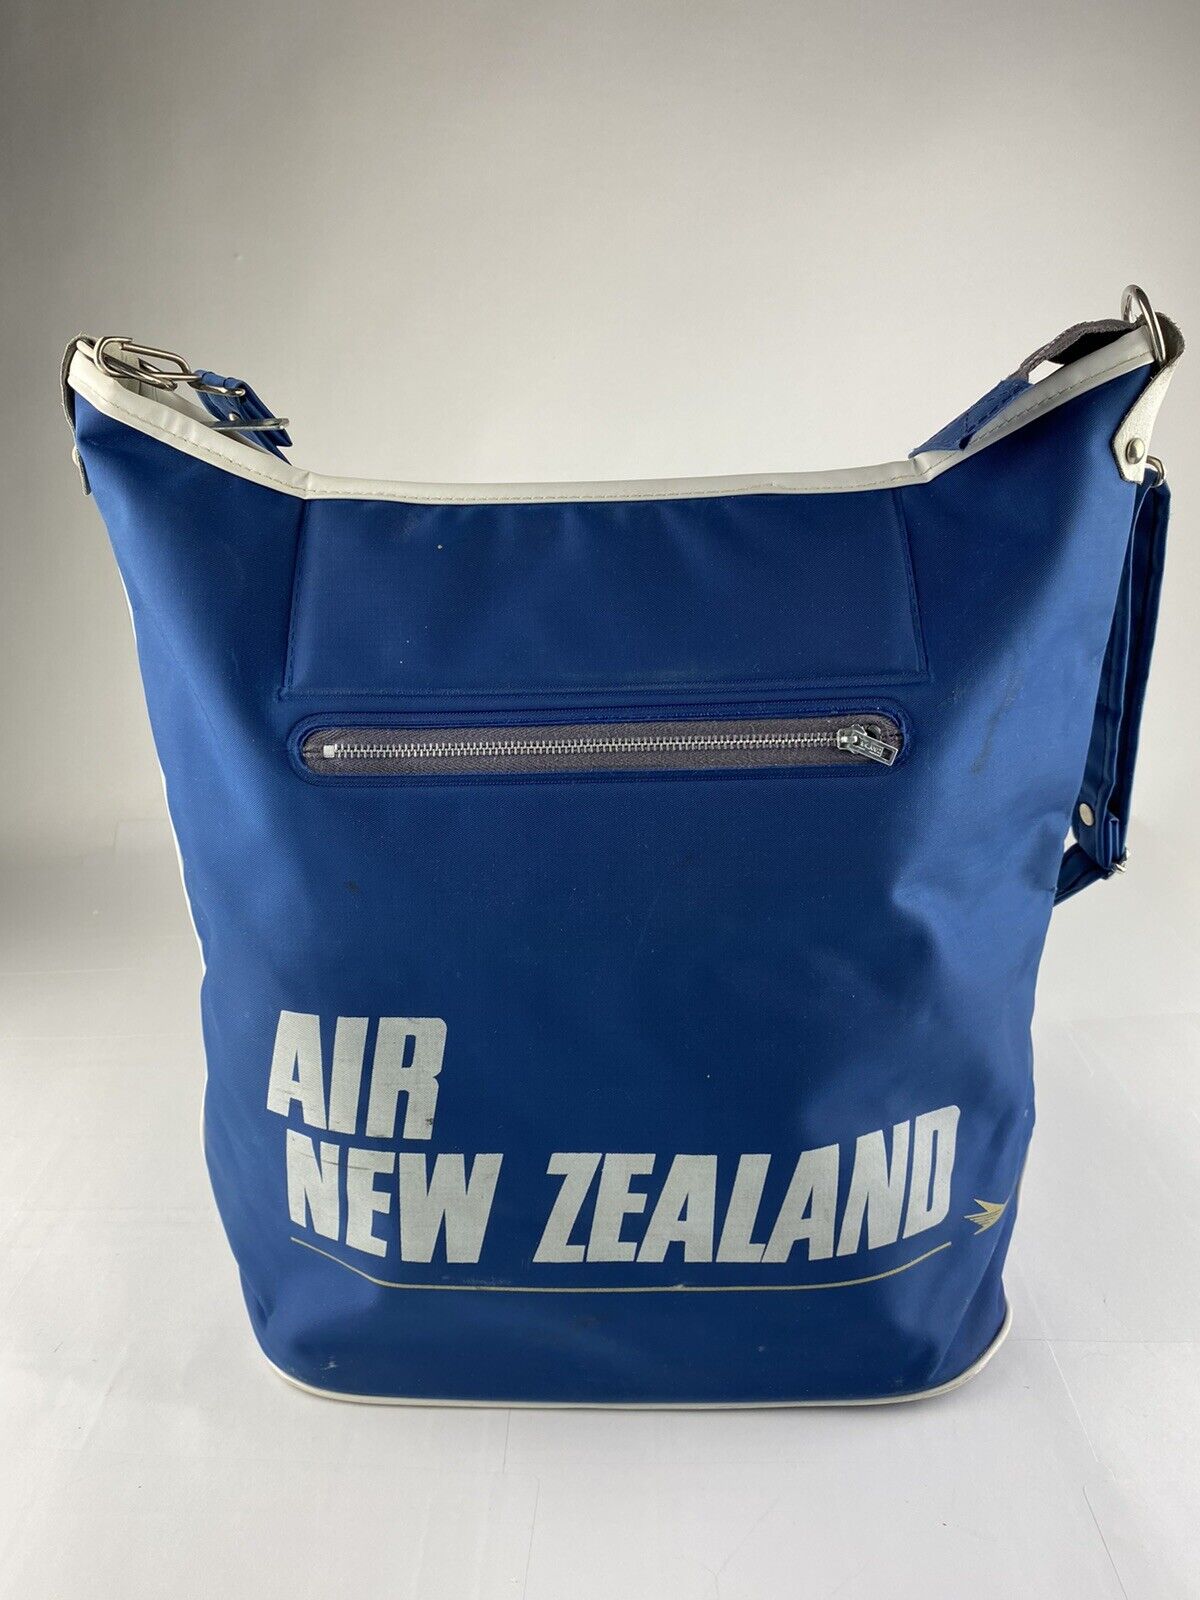 Vintage New Zealand Airline Bag Blue Strap RARE